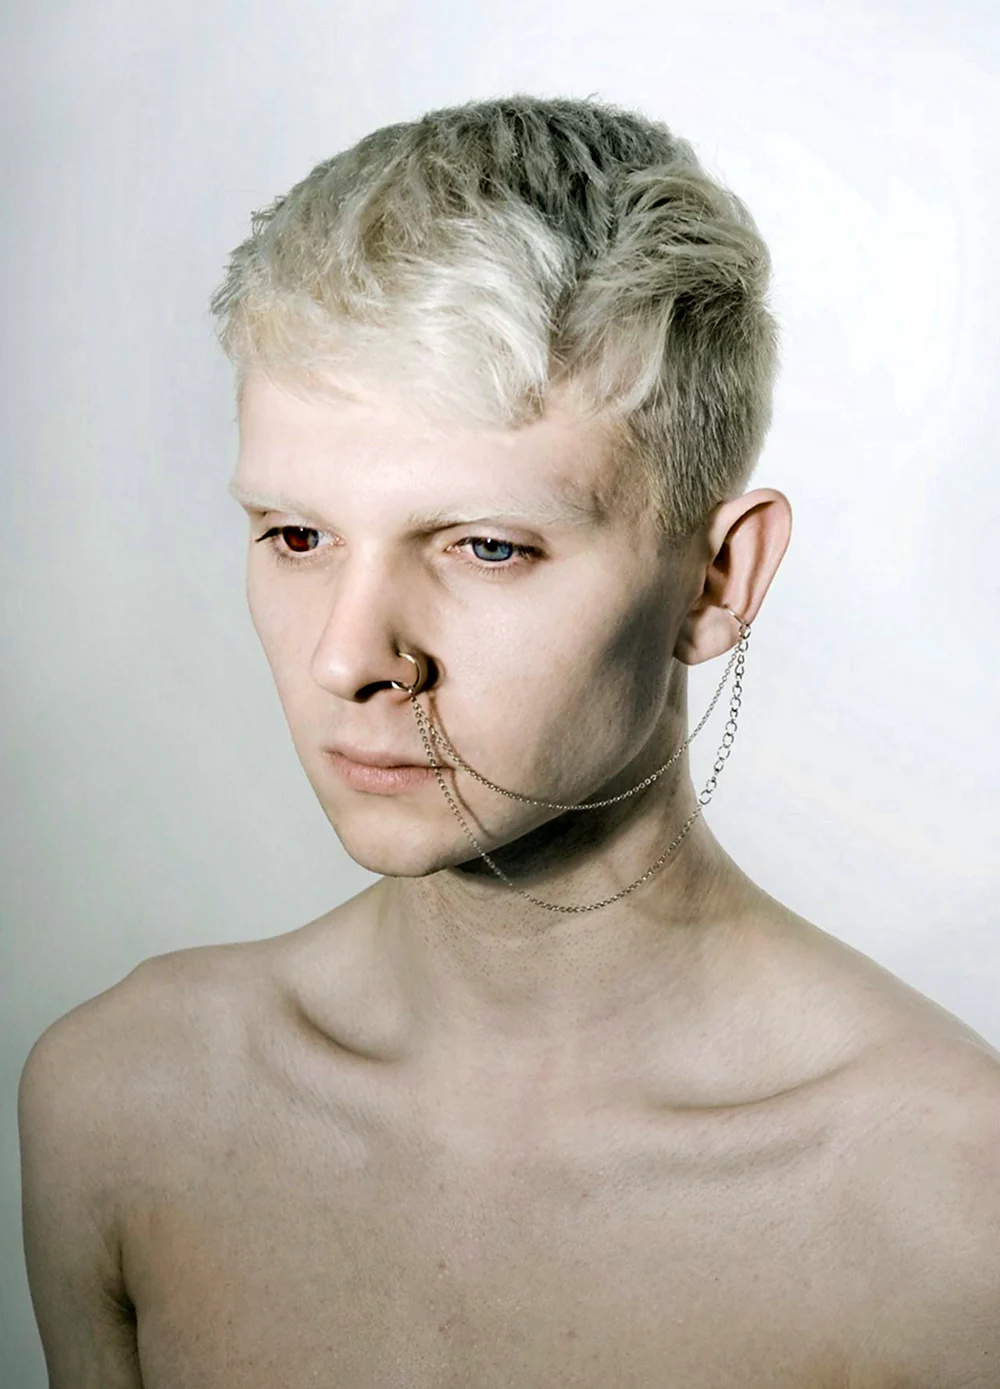 Джуэл Джеффри фотомодель альбинос